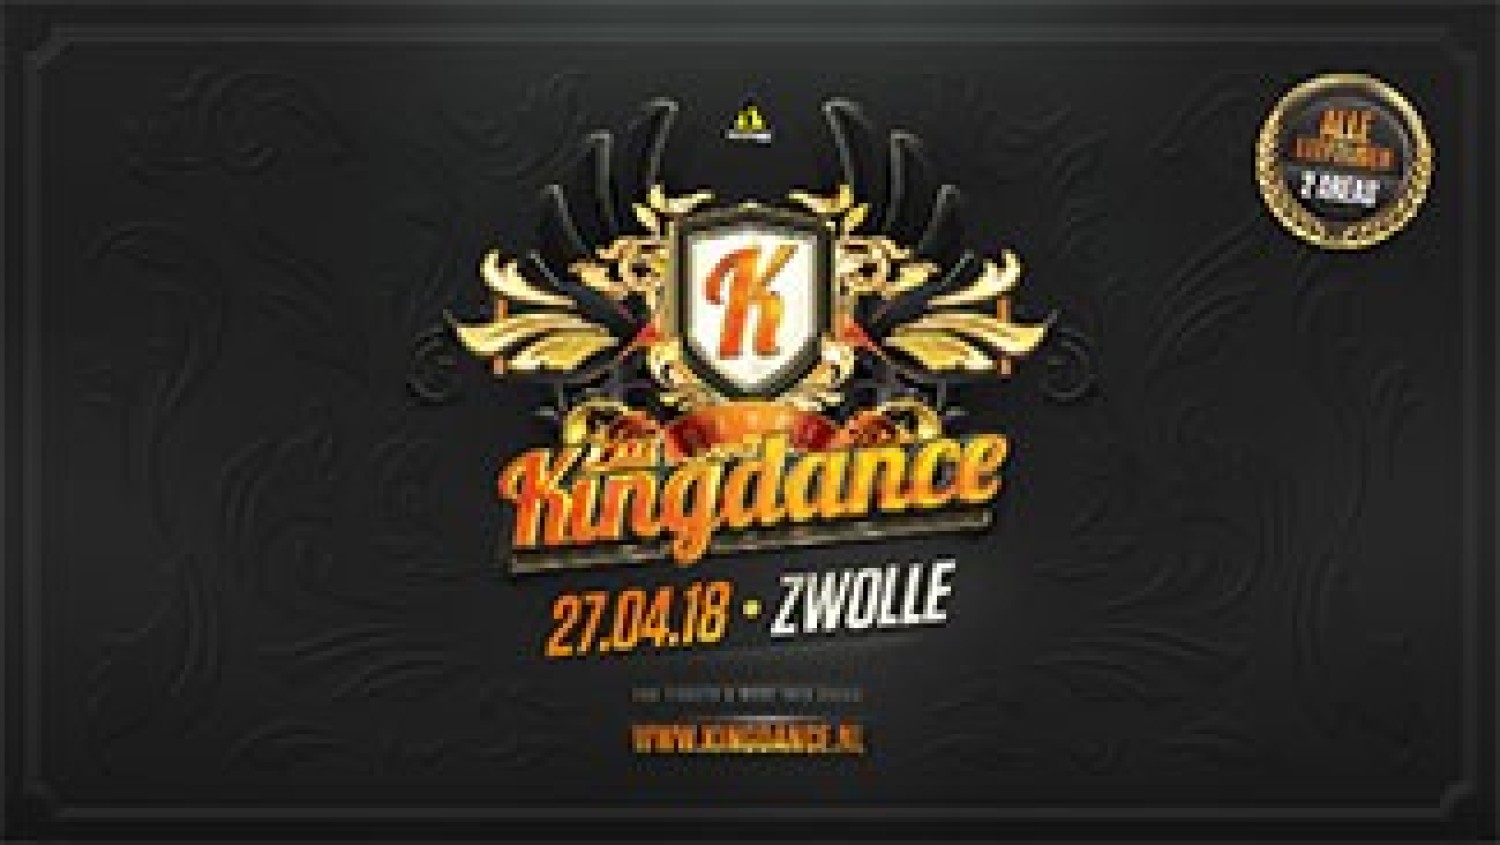 Party nieuws: Kingdance Zwolle 2018 presenteert volledige line-up!